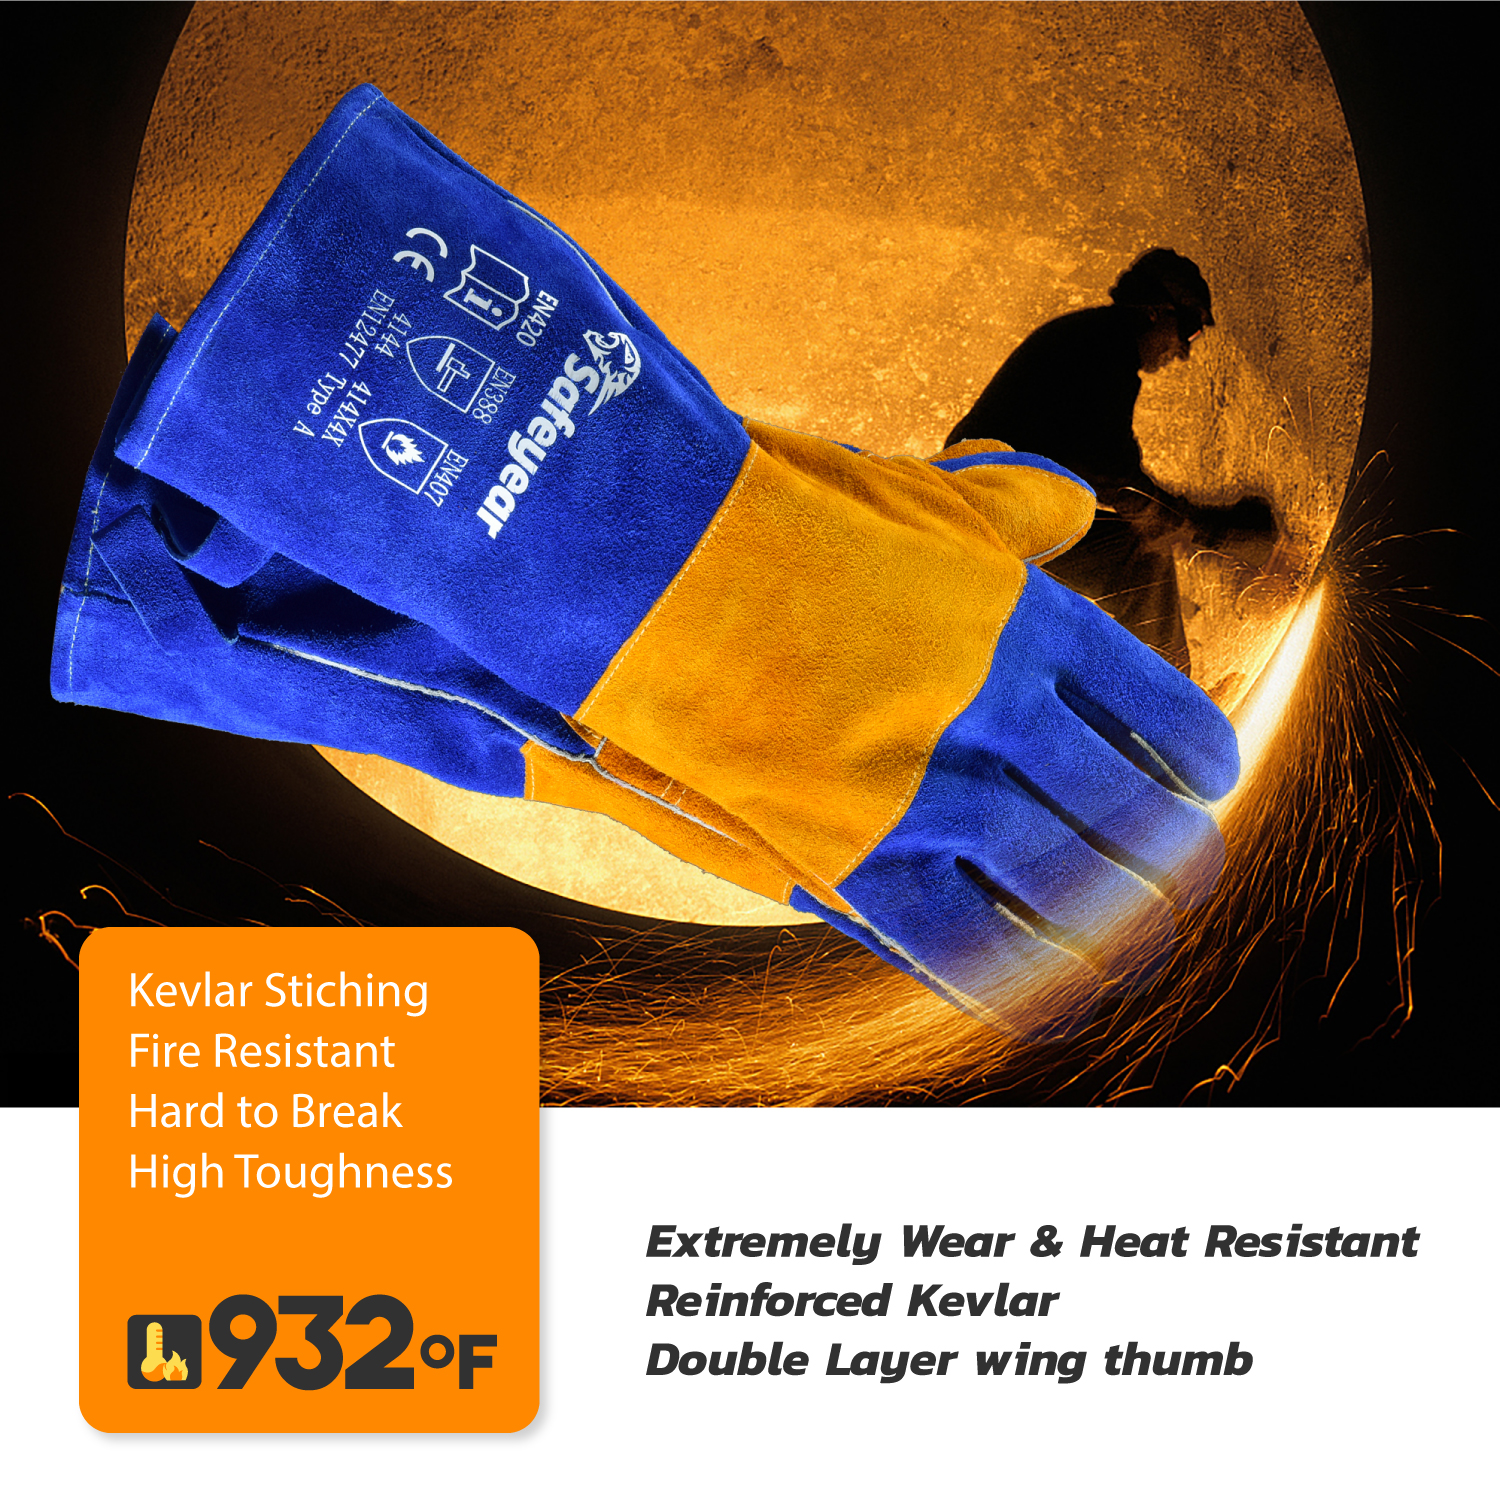 Welding Leather Work Gloves FL-1023 Blue